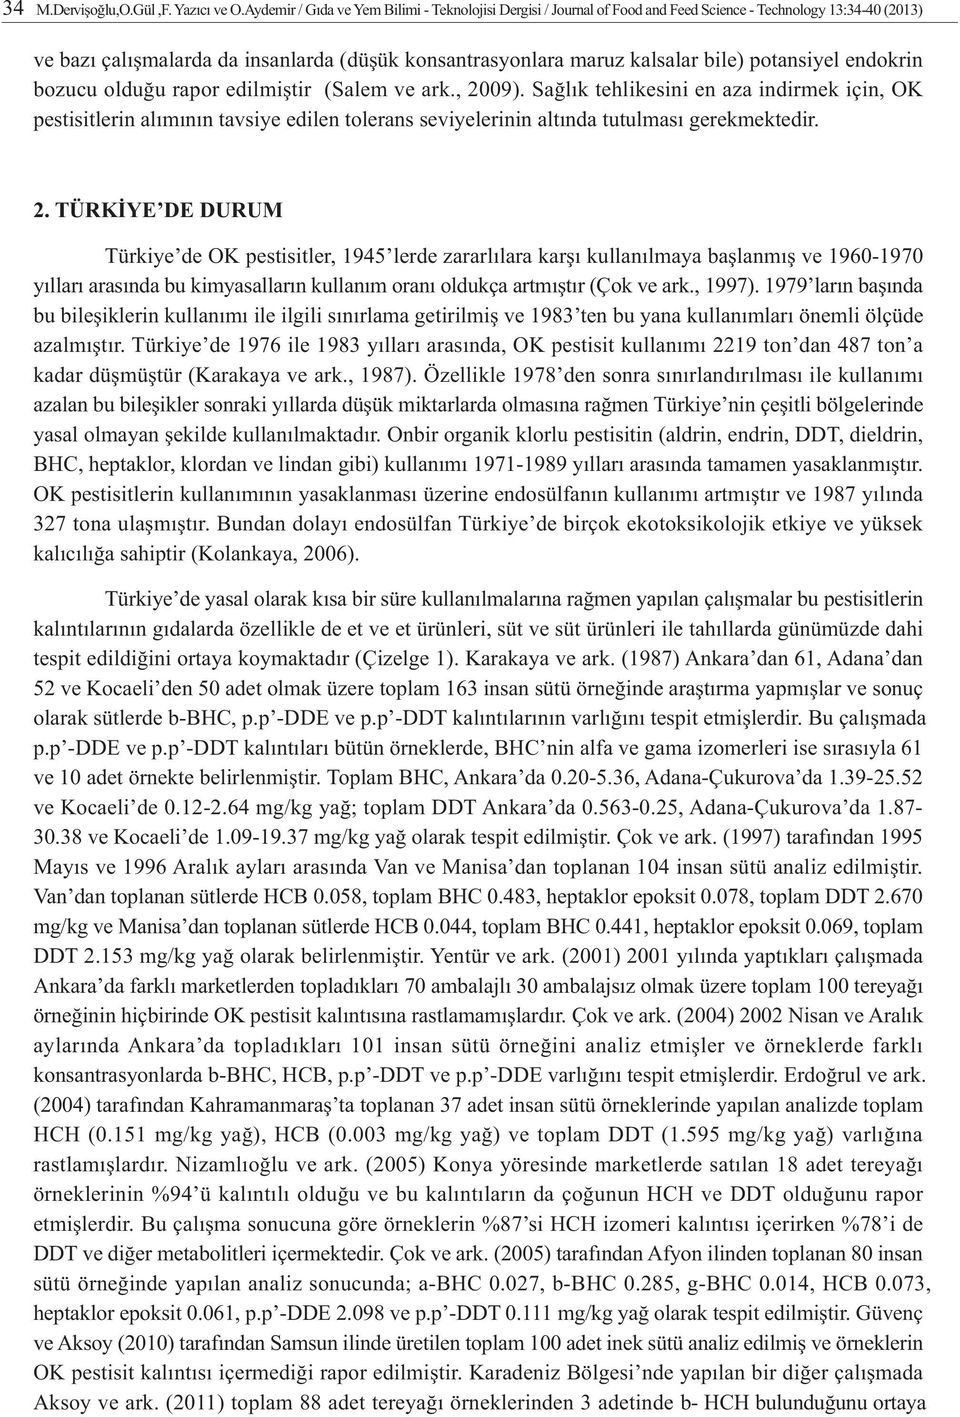 potansiyel endokrin bozucu olduðu rapor edilmiþtir (Salem ve ark., 2009).